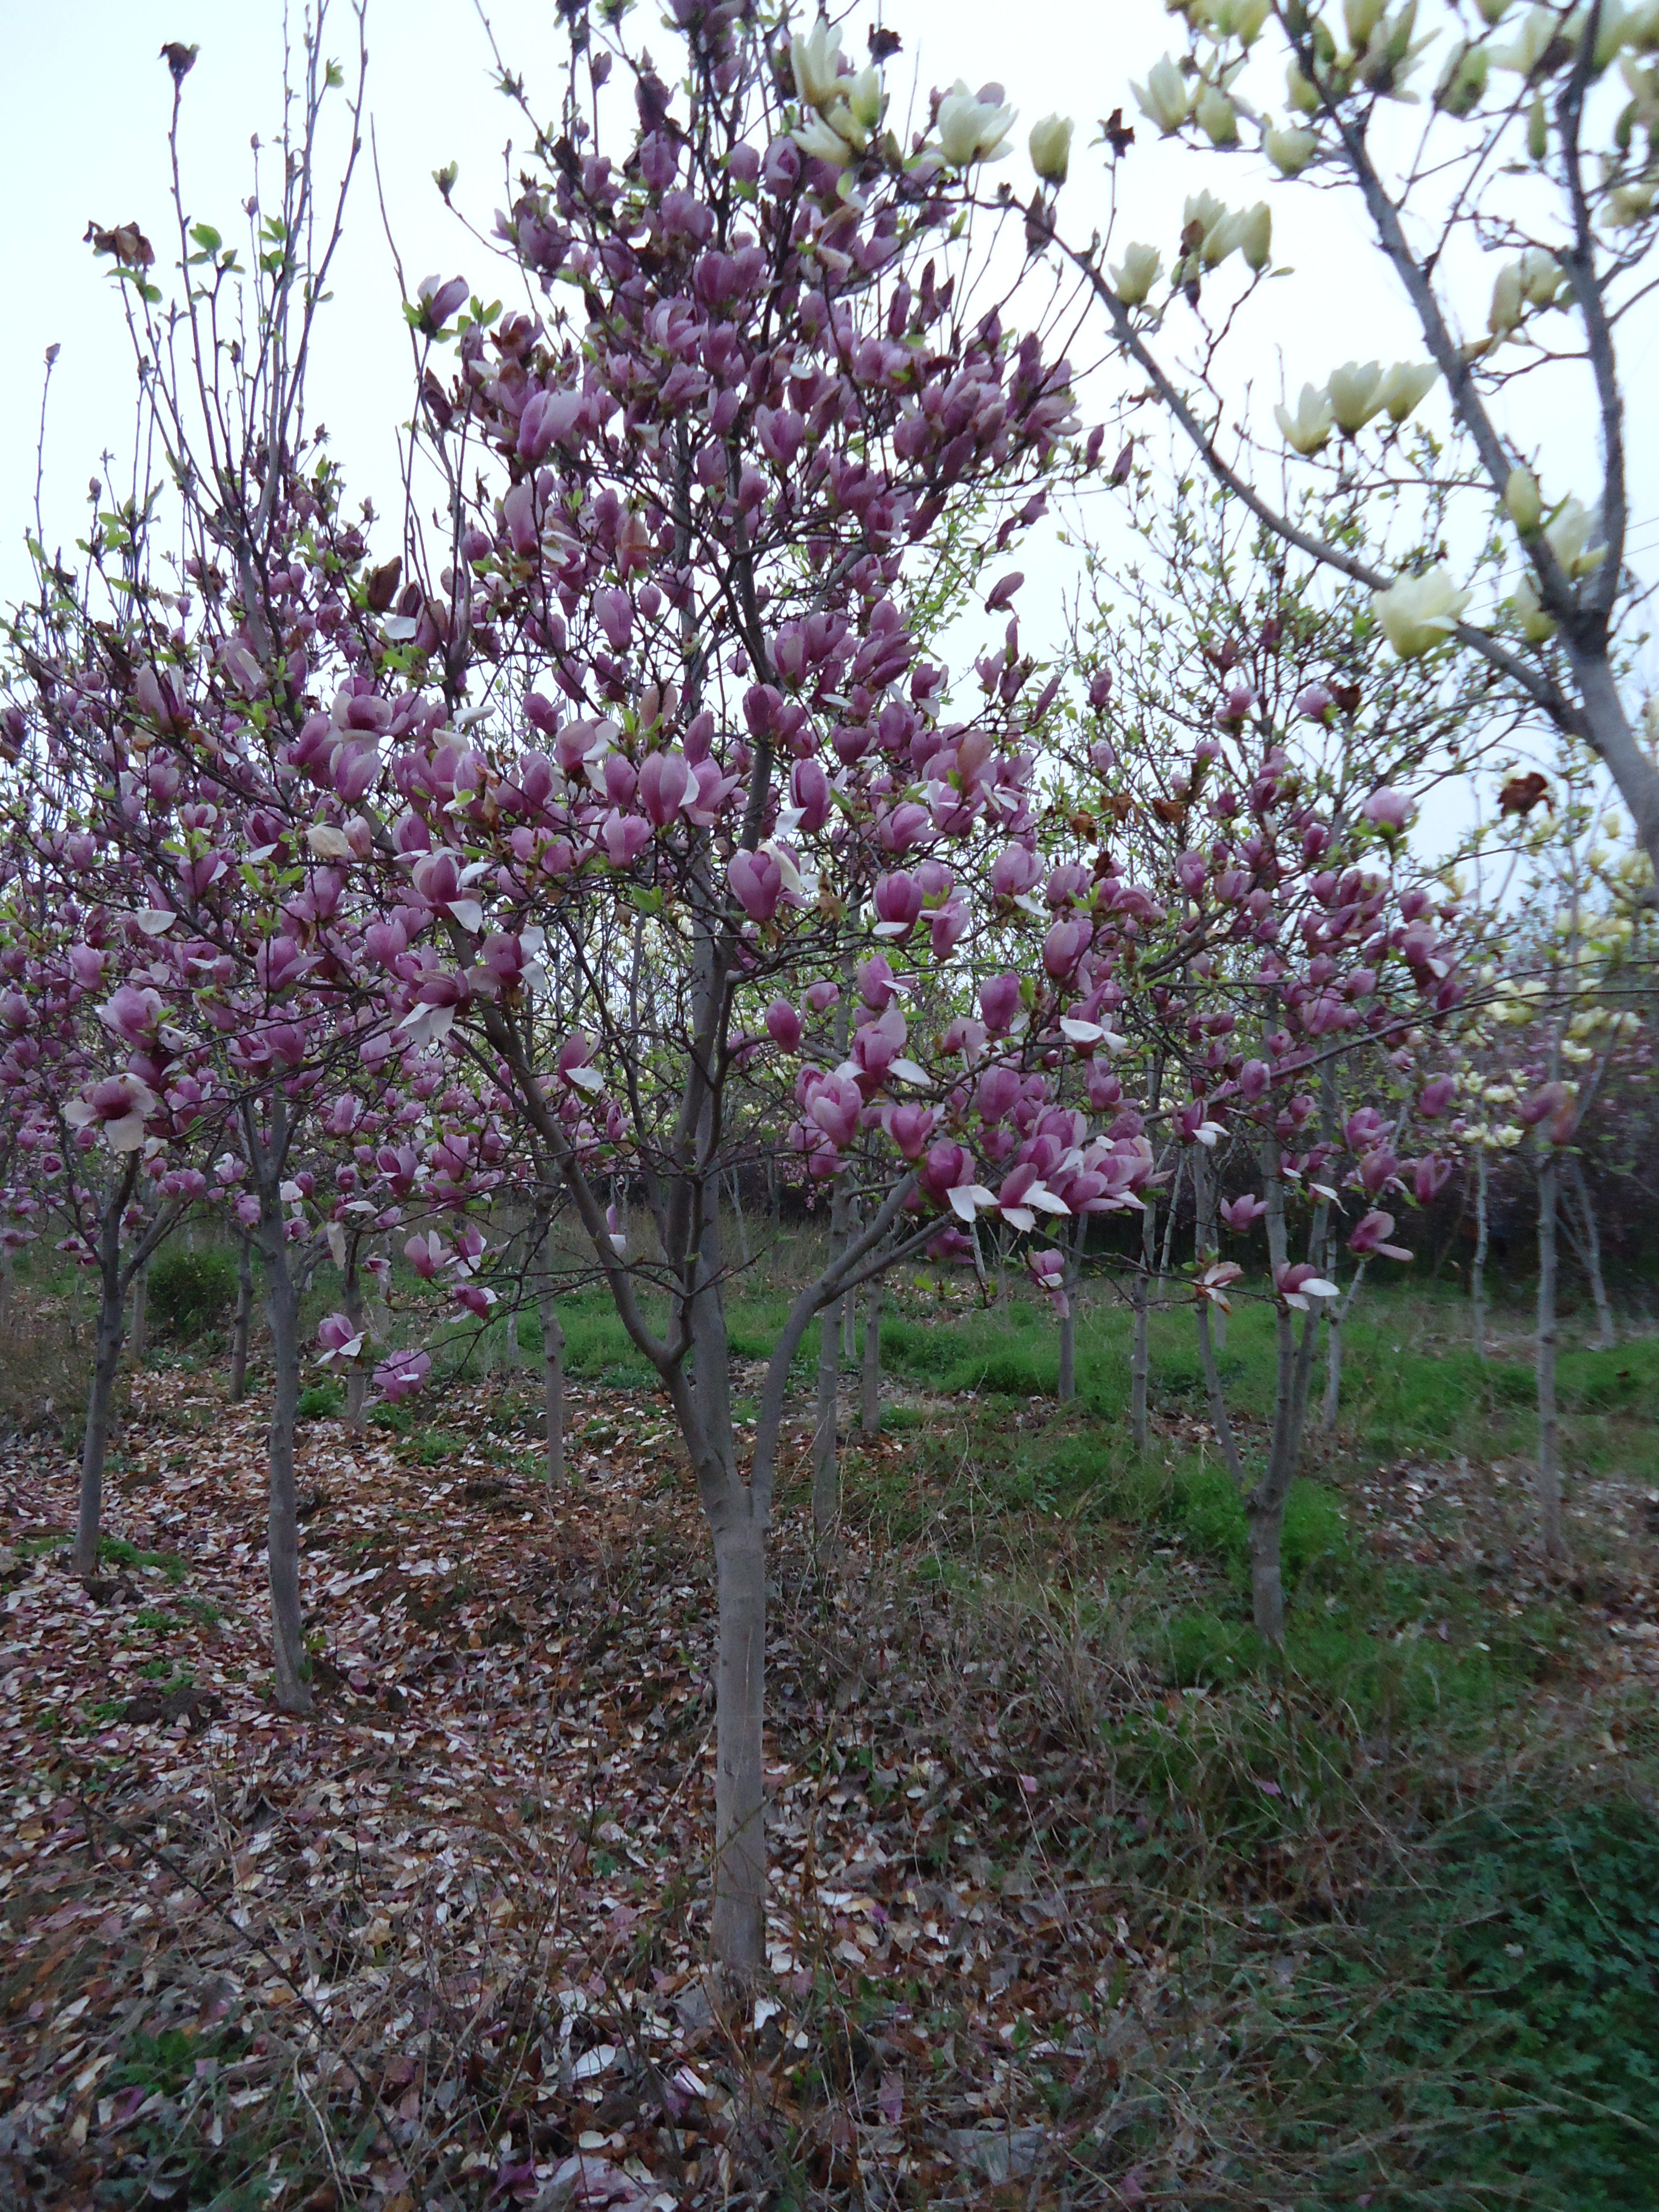 紫玉兰属落叶灌木,高达3米,常丛生,树皮灰褐色,小枝绿紫色或淡褐紫色.